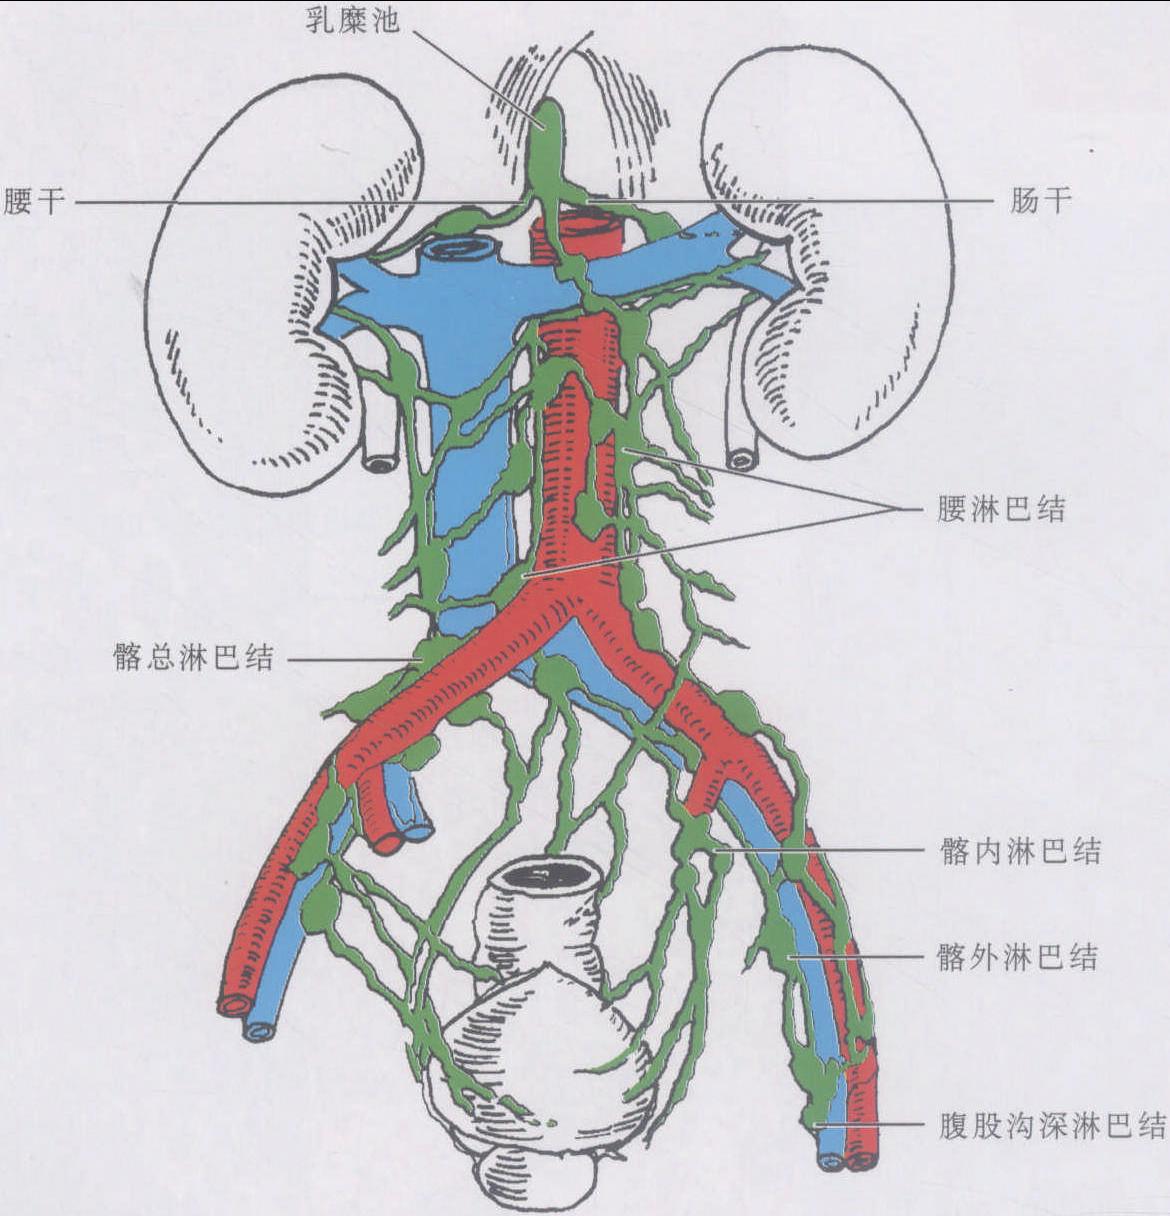 医学图说︱大肠淋巴结群的分类、名称和定义（图表）_日本